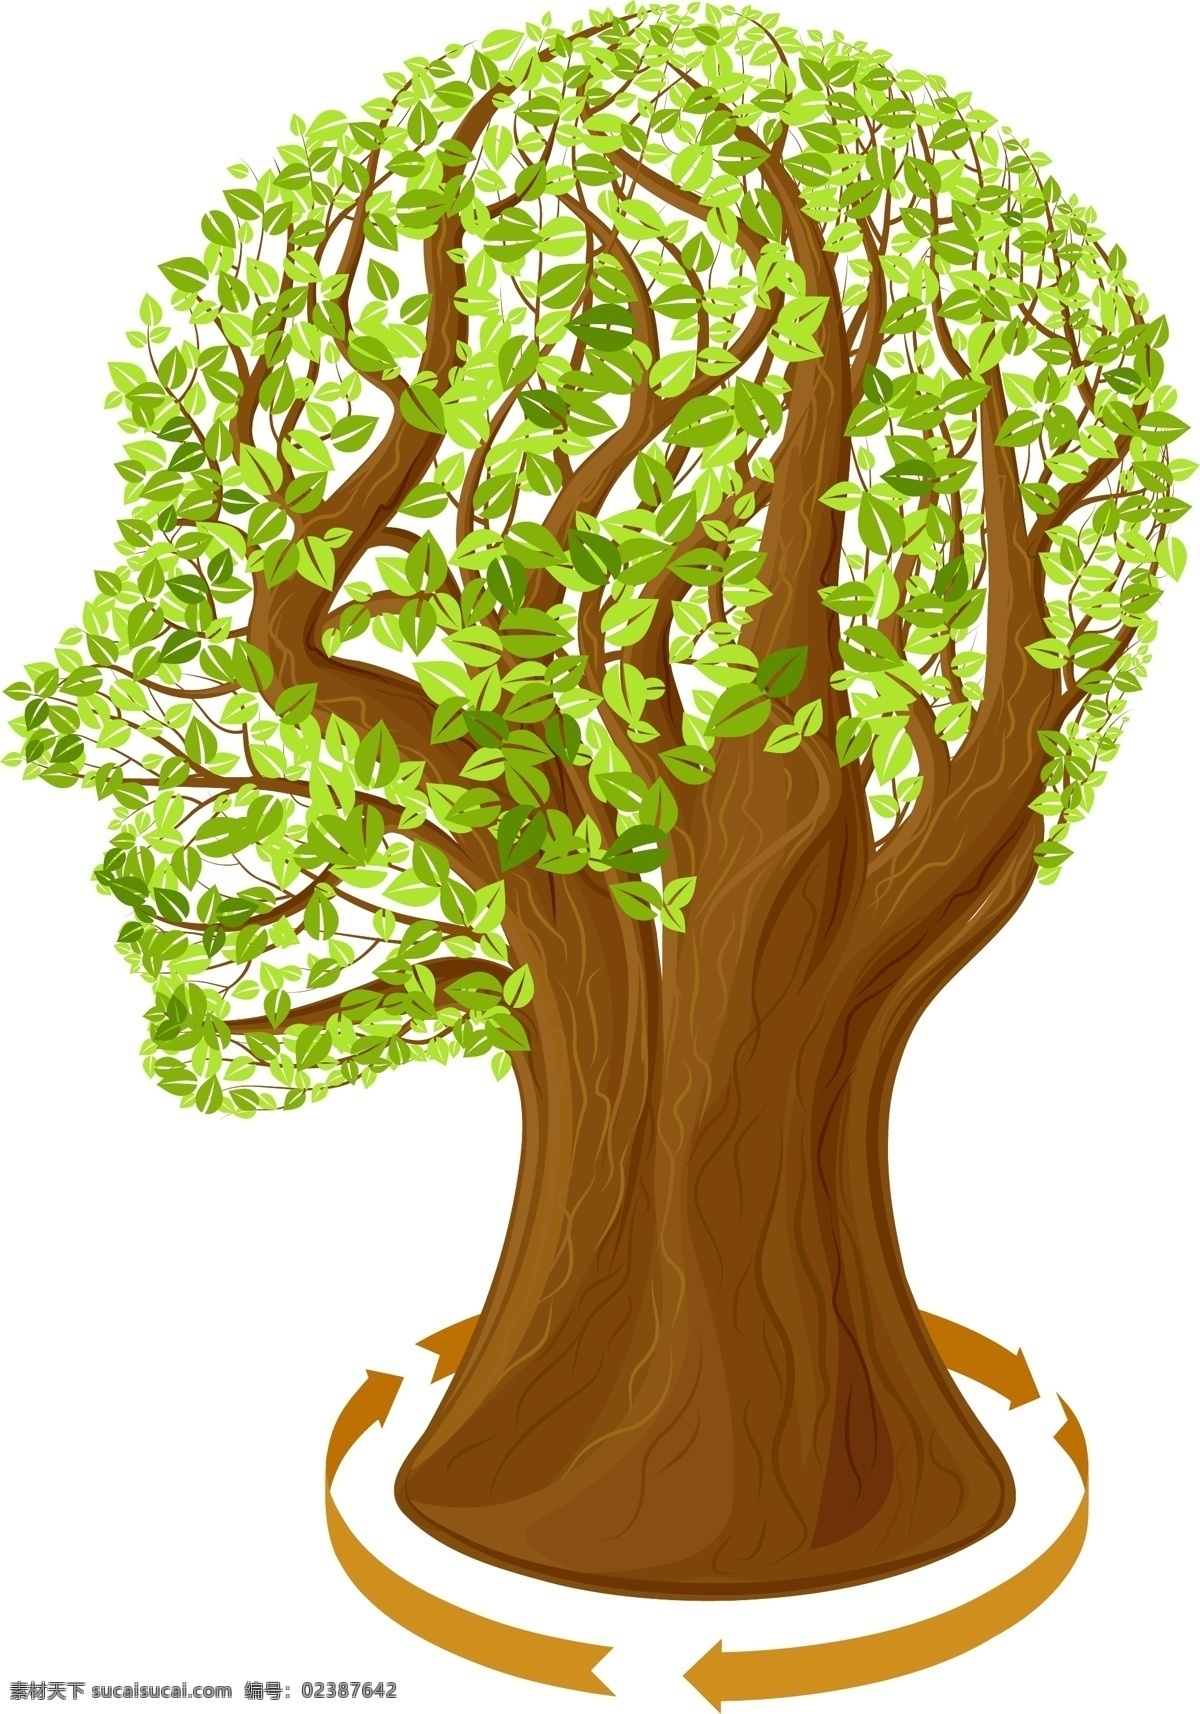 创意 树叶 人脑 矢量 脑袋 叶子 树木 大树 植物 箭头 循环 装饰 卡片 插画 背景 海报 画册 创意设计